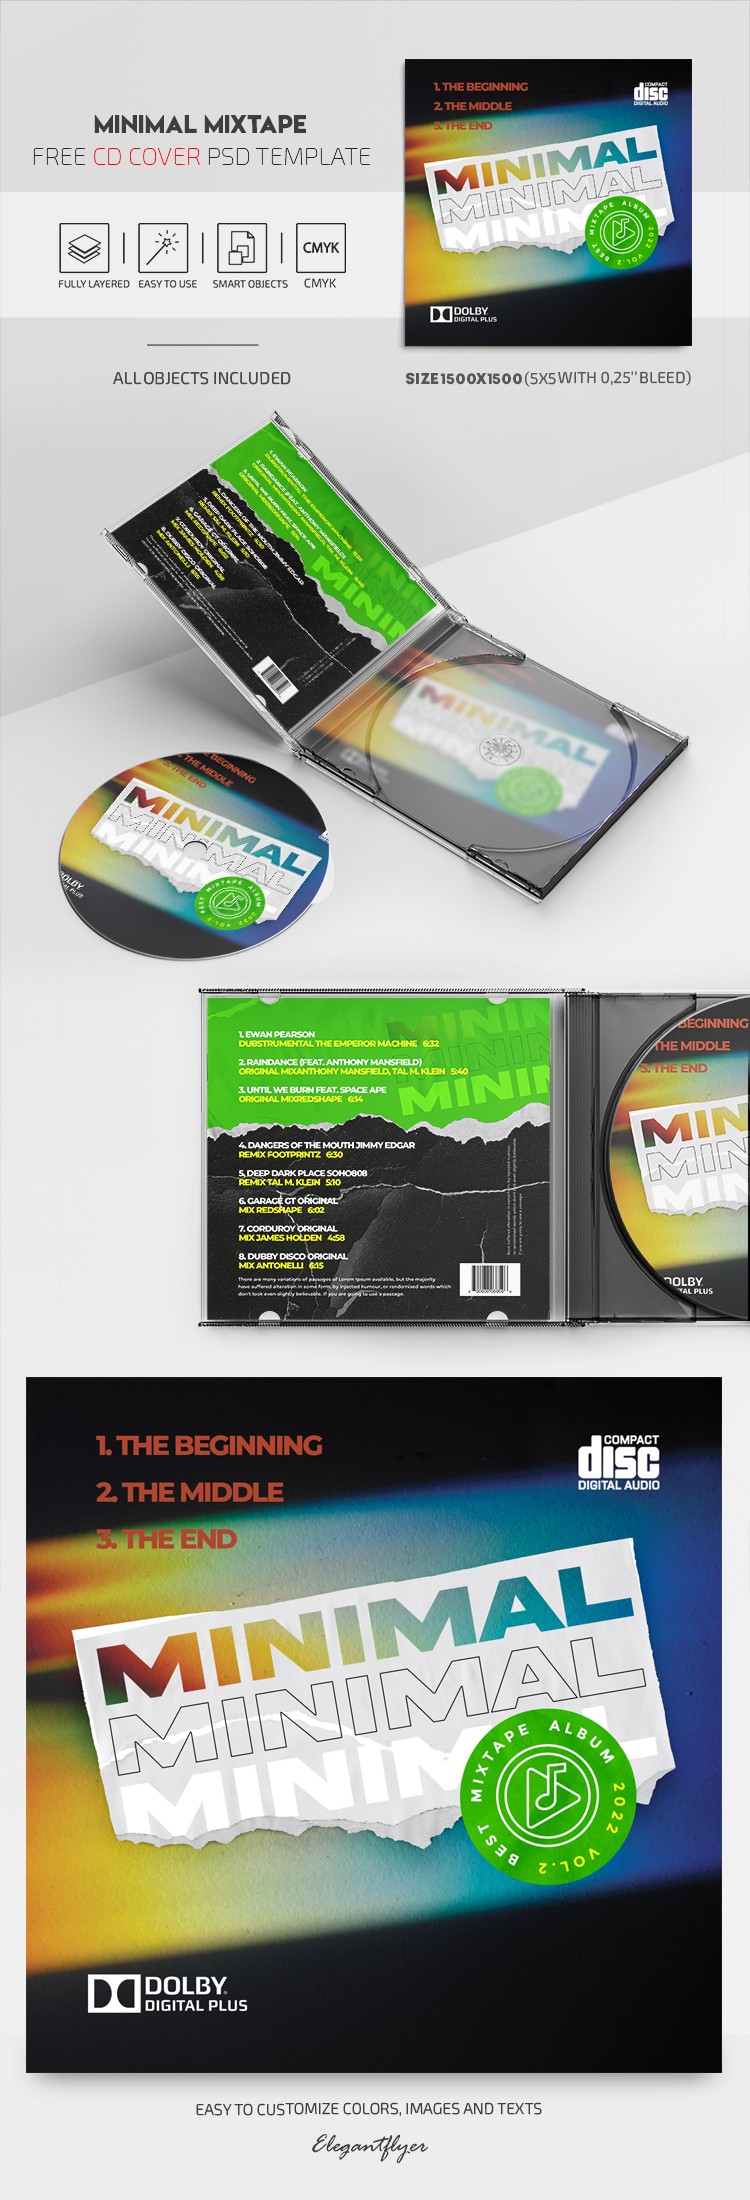 Pochette de CD de mixtape minimaliste by ElegantFlyer